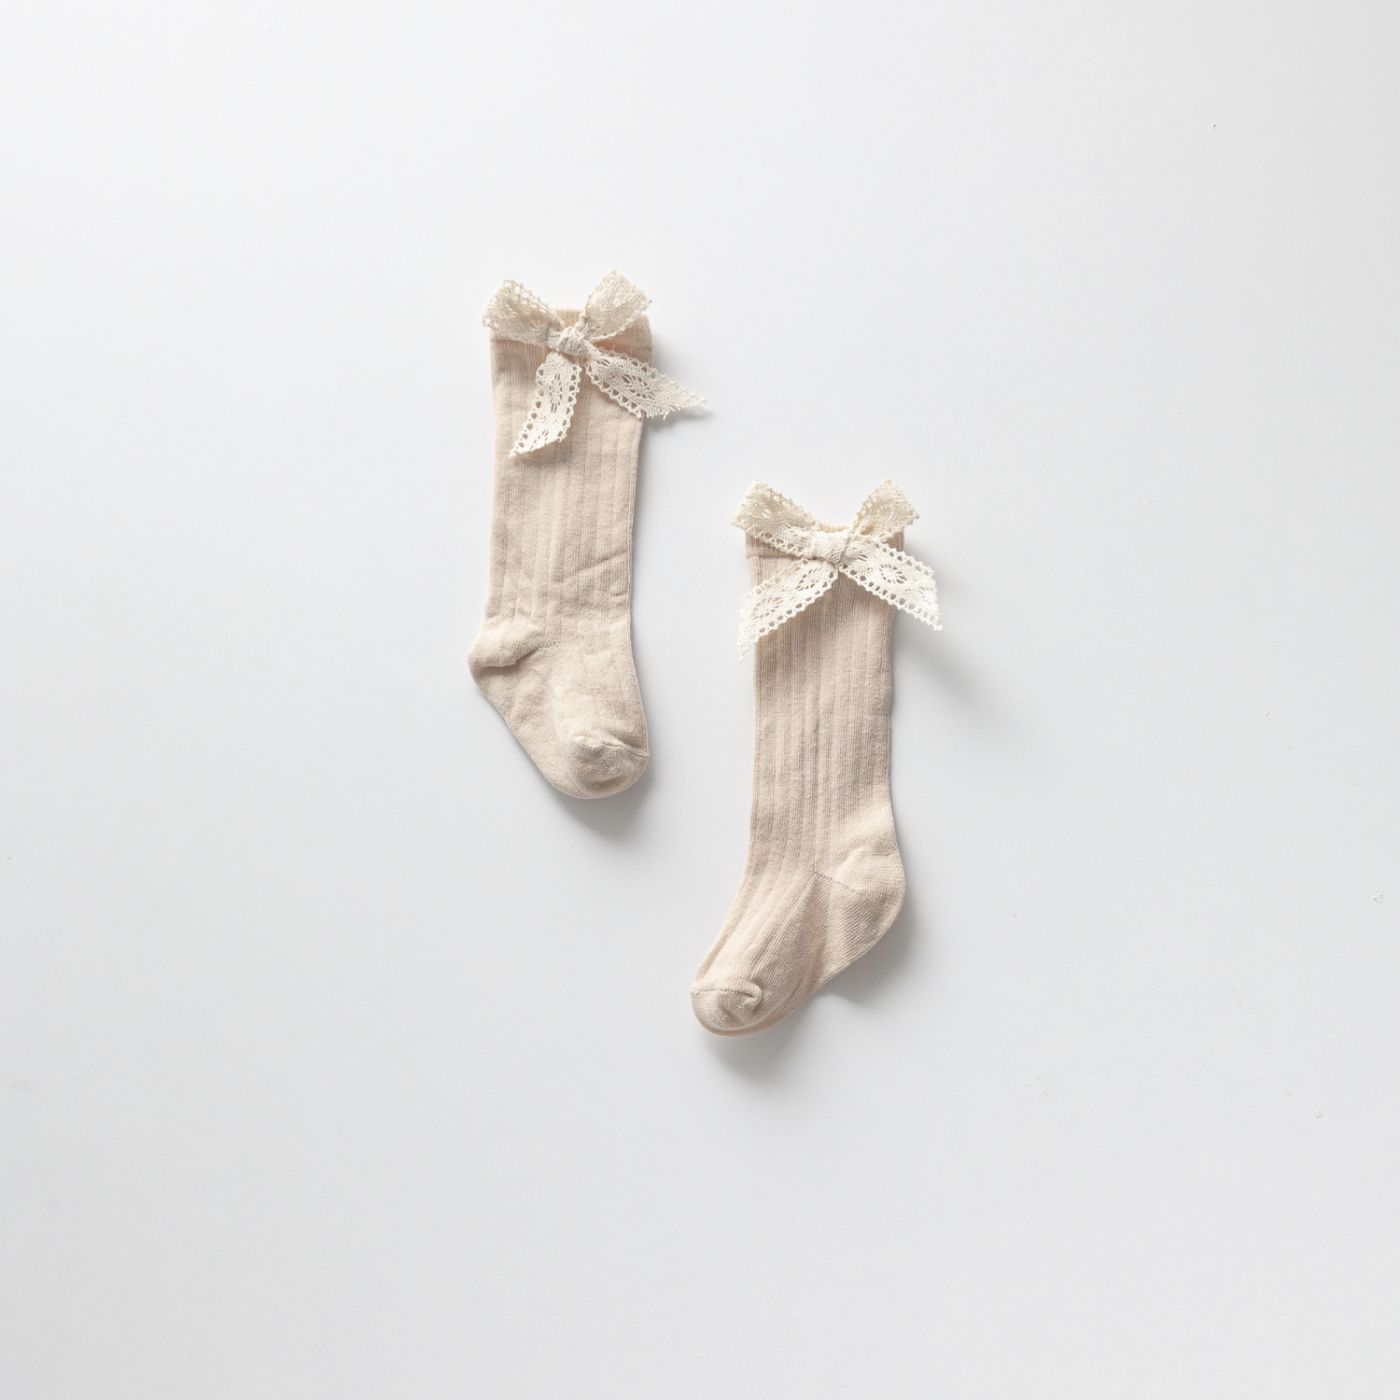 Čarape sa čipkanom mašnom